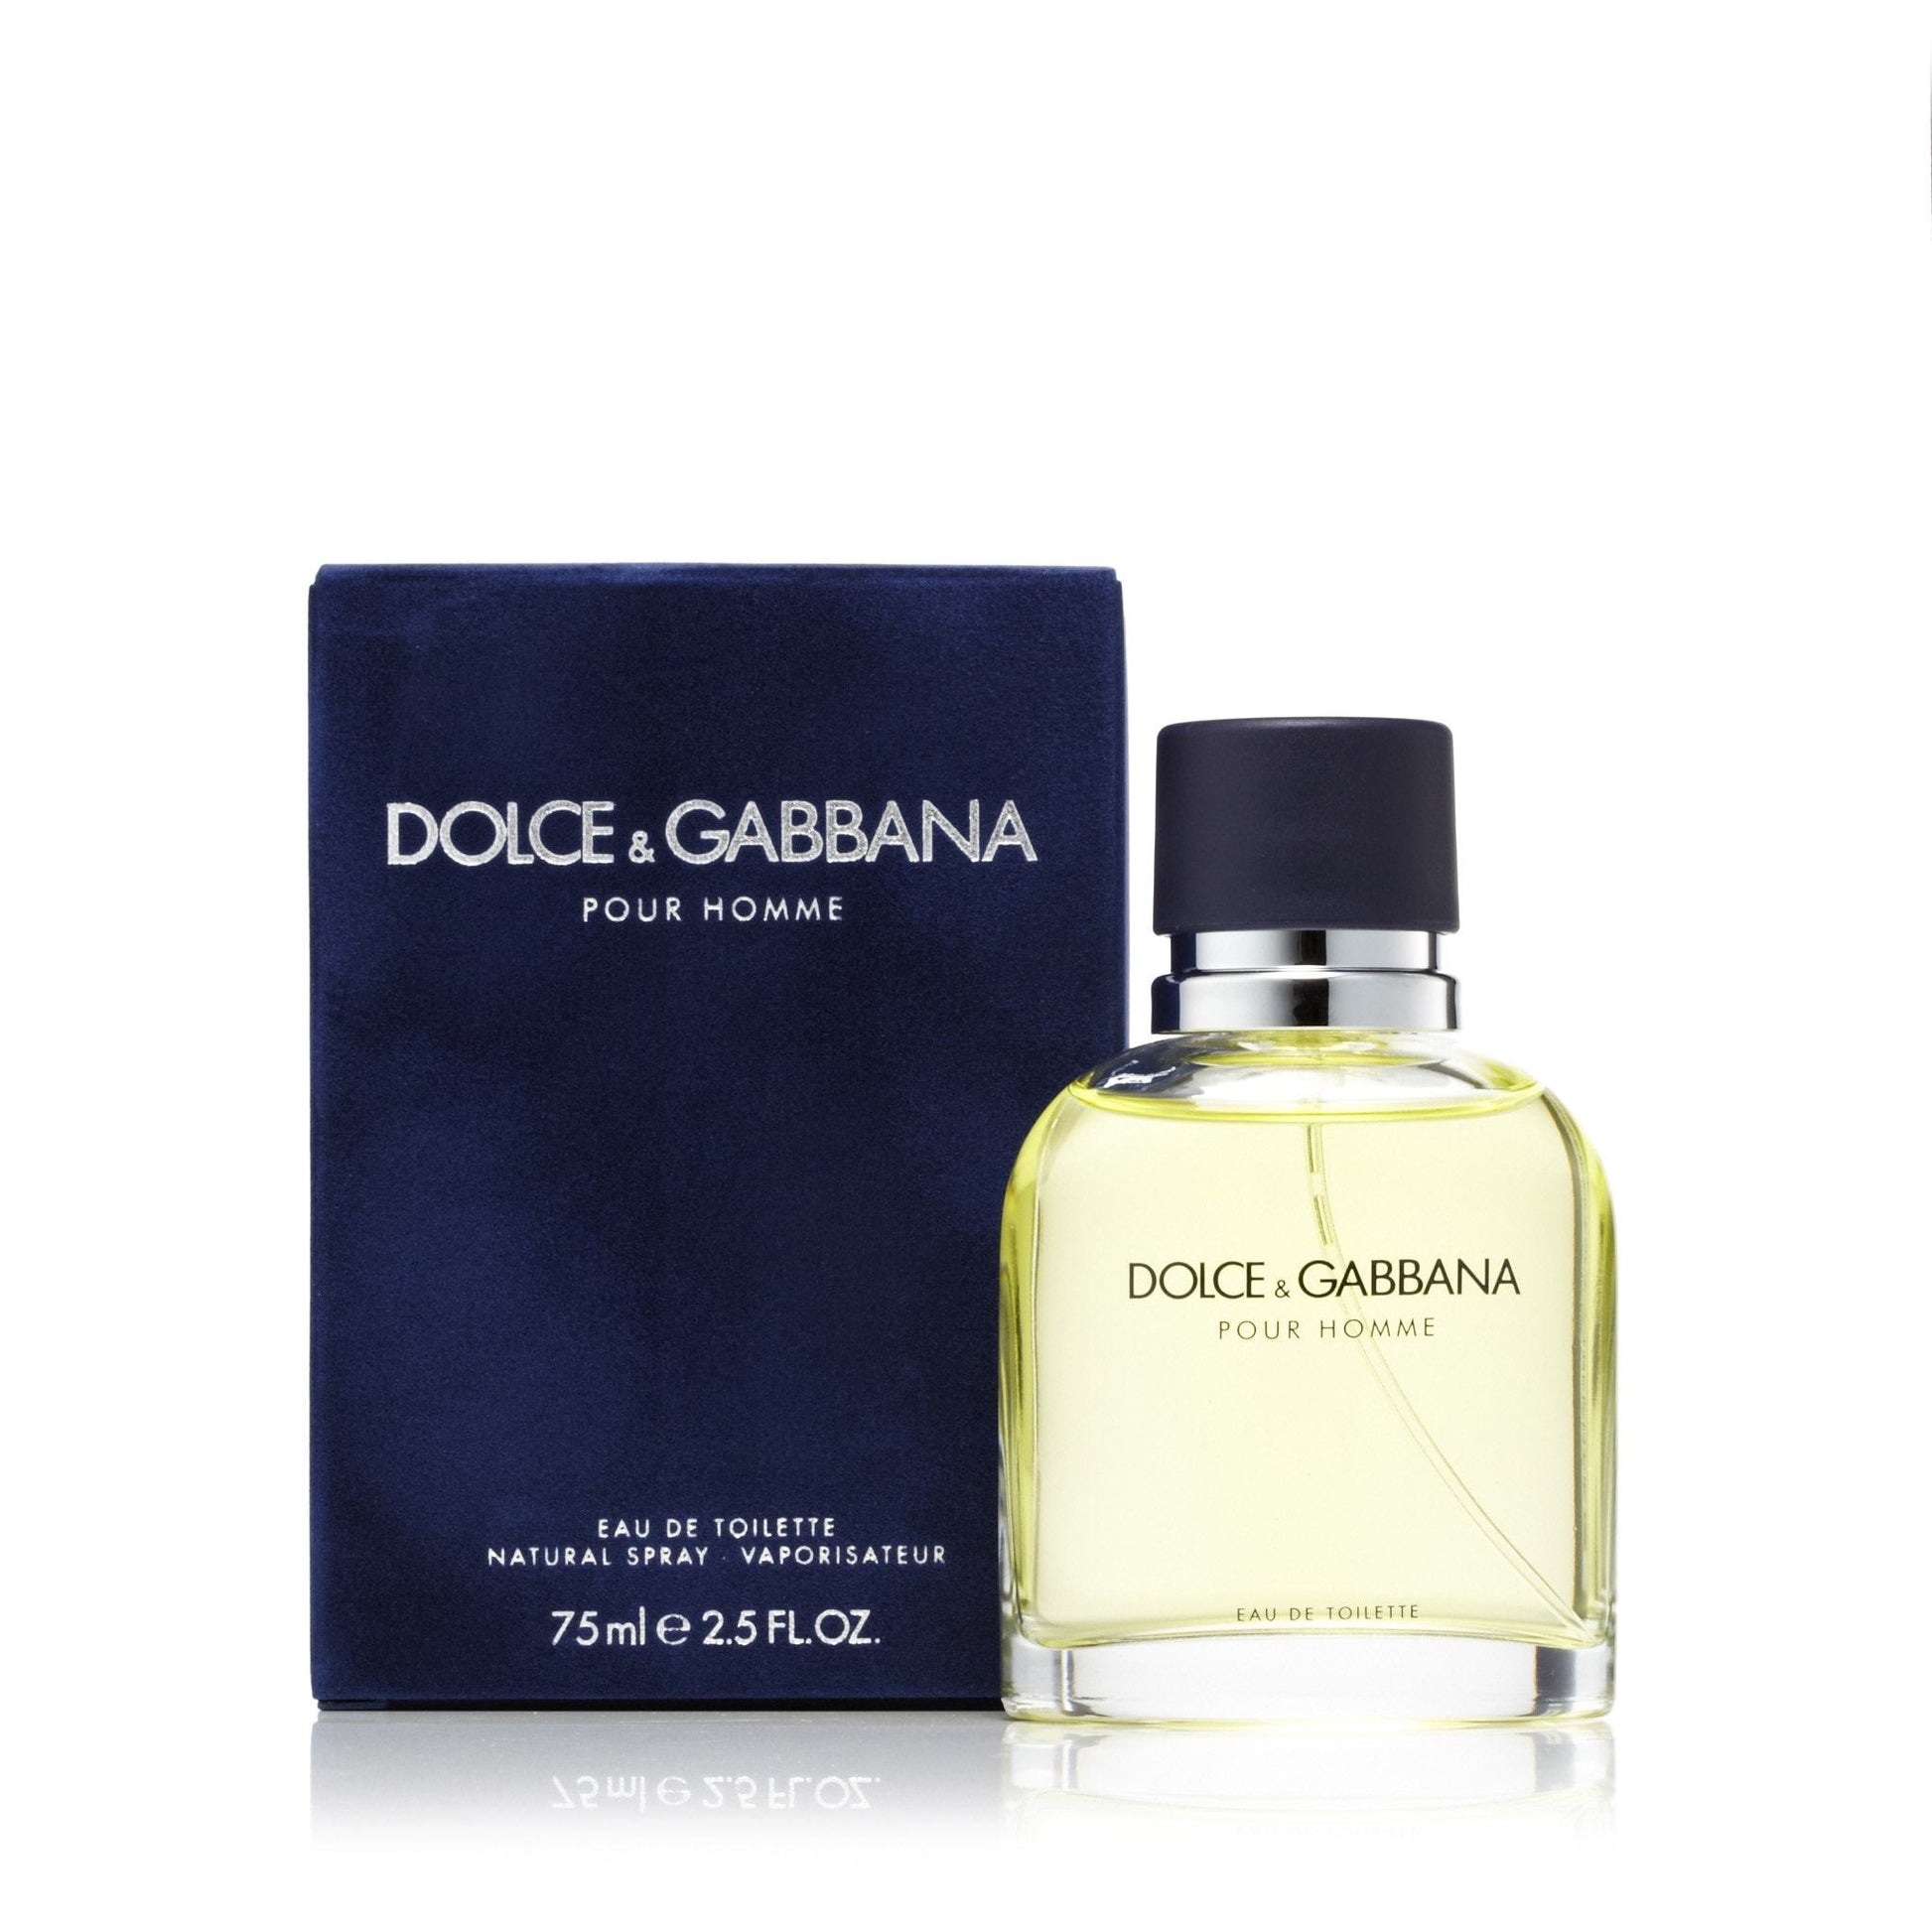 Dolce & Gabbana Eau de Toilette Spray for Men by D&G, Product image 6